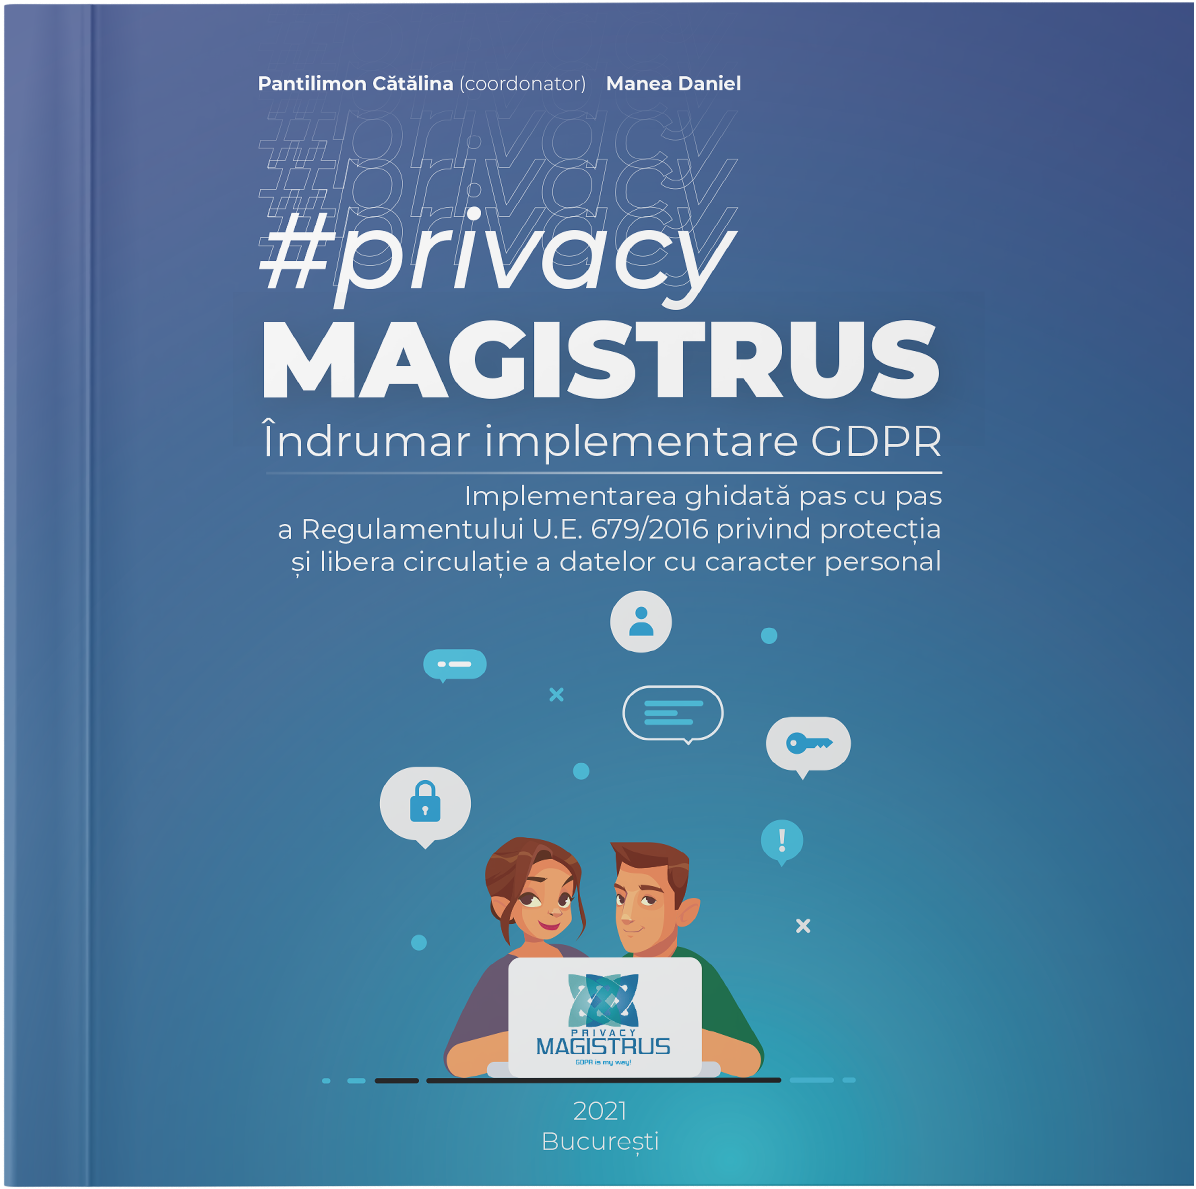 Îndrumar implementare GDPR #privacyMagistrus